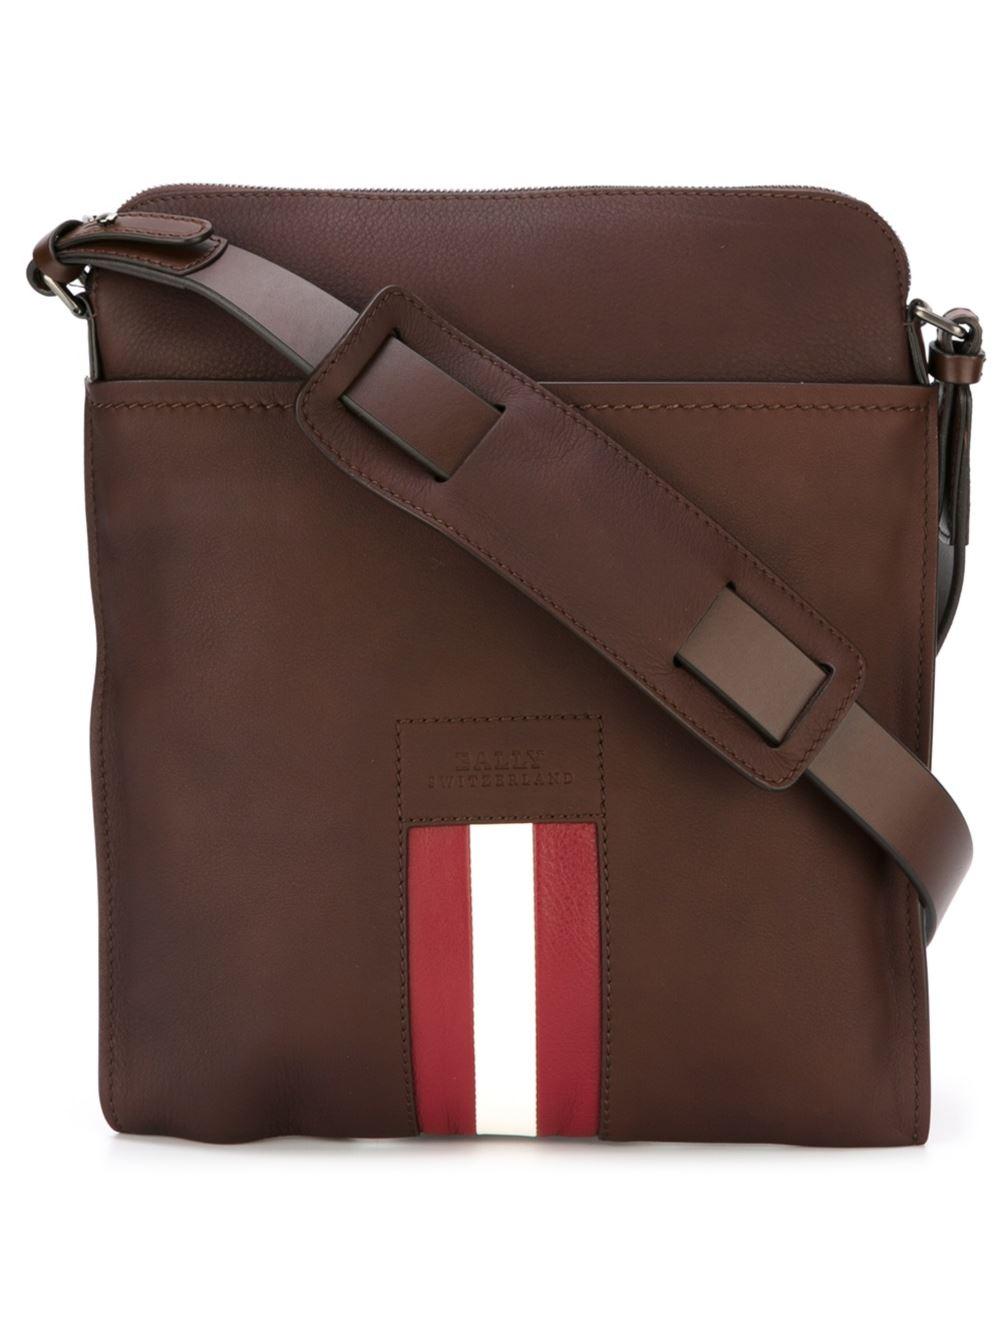 Lyst - Bally Leather Shoulder Bag in Brown for Men